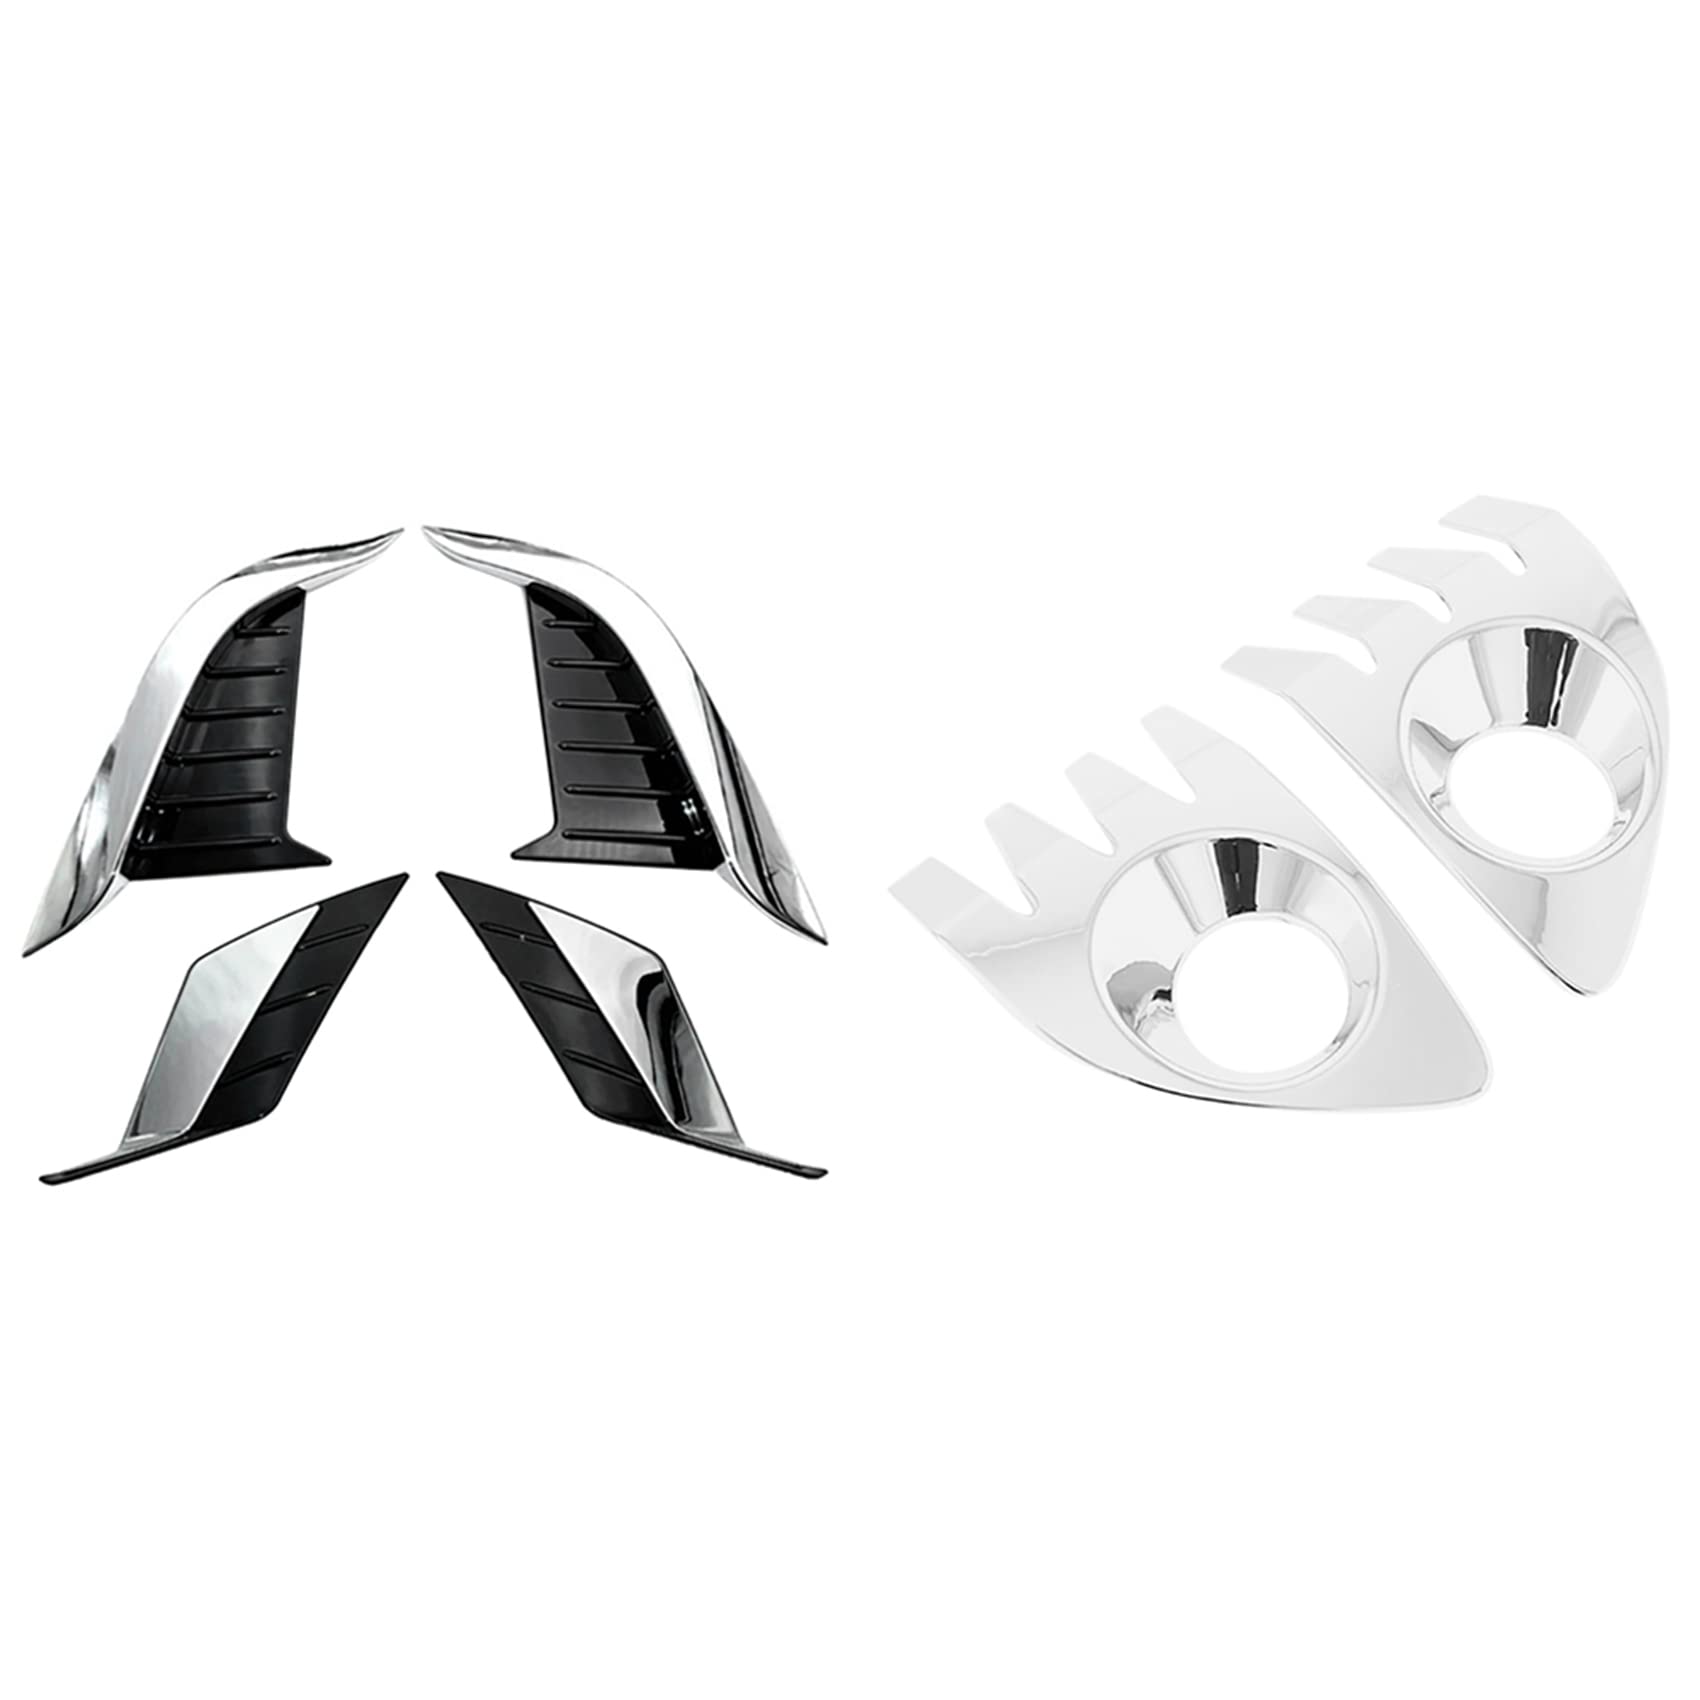 yomoe Nebelscheinwerfer aus ABS, Chrom, für Vorder- und Rückseite, für Augenlid-, Augenbrauenabdeckung, Zierleiste, Blende, Garnierung, 6 Stück von yomoe